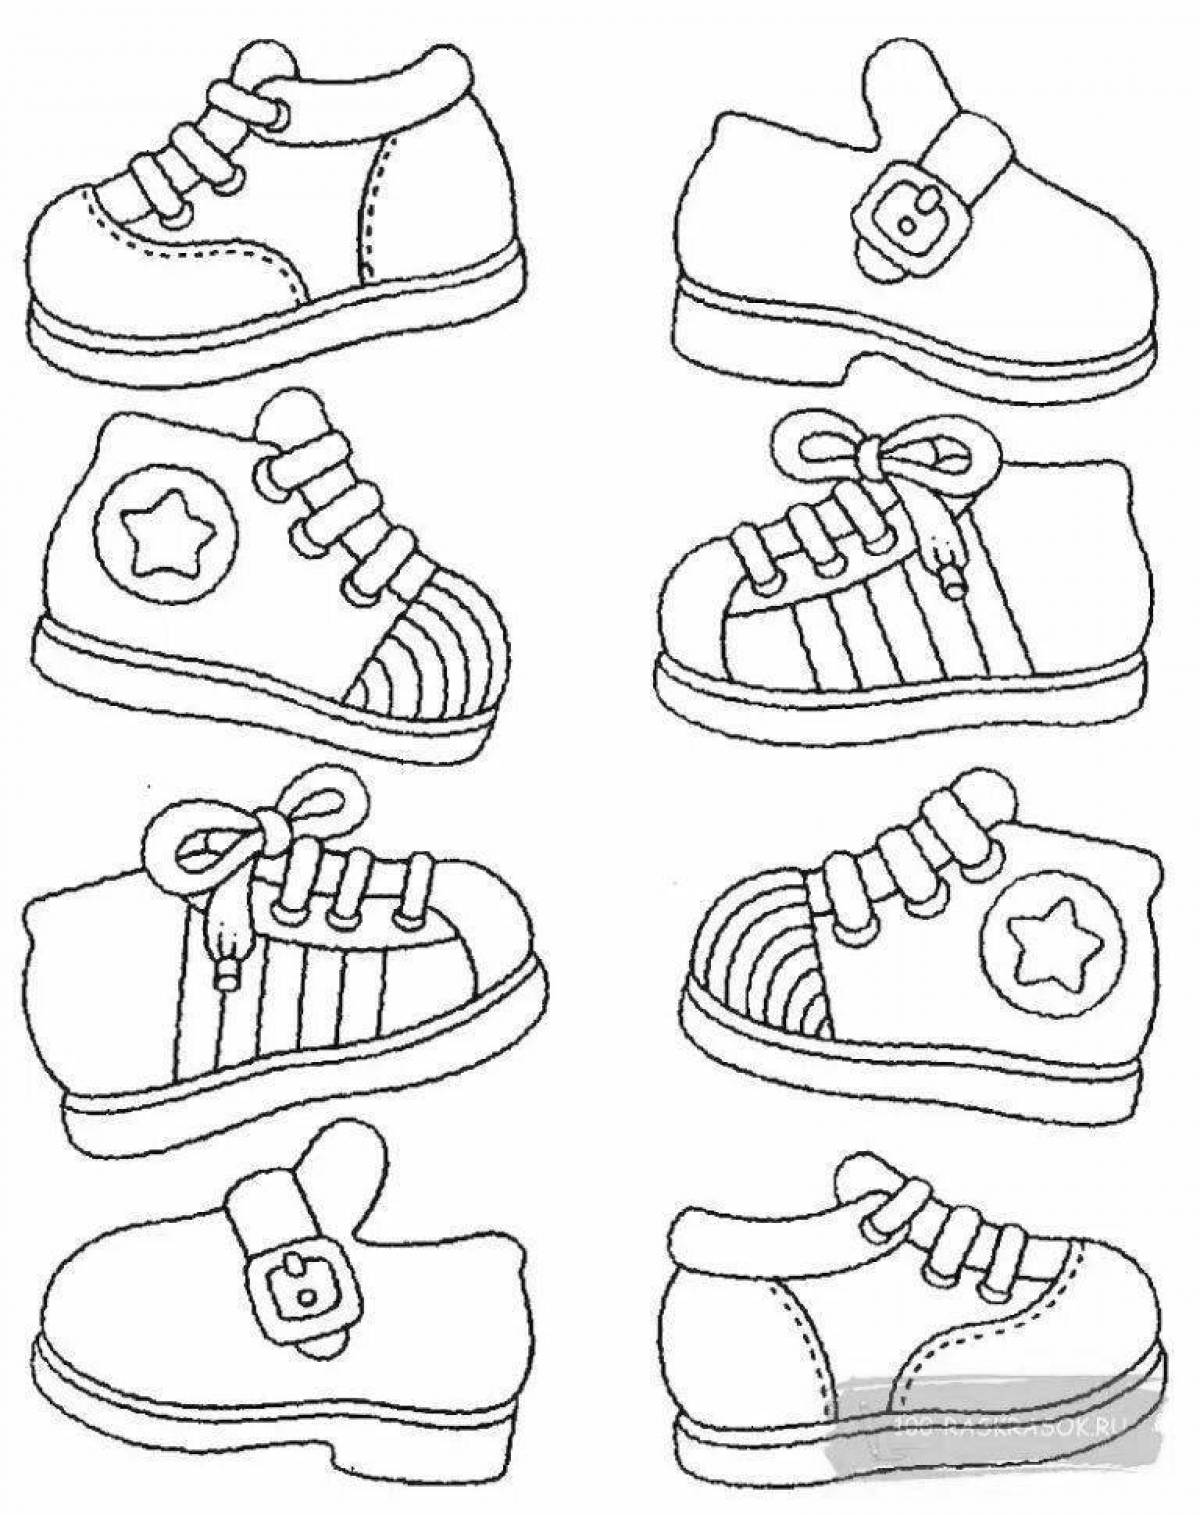 Увлекательная раскраска обуви для детей 5-6 лет